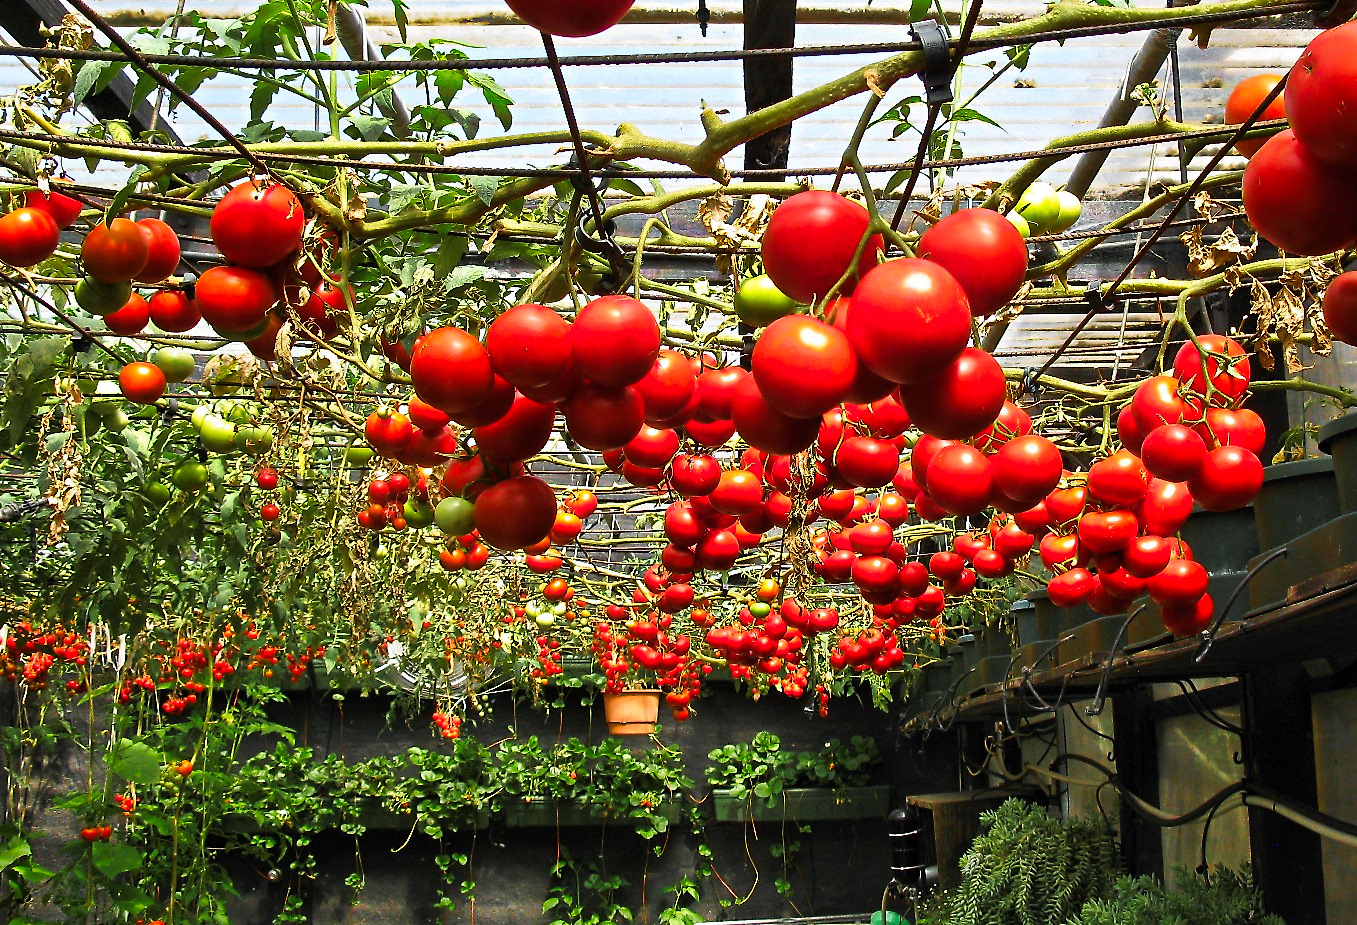 Уход за помидорами в открытом грунте: секреты большого урожая